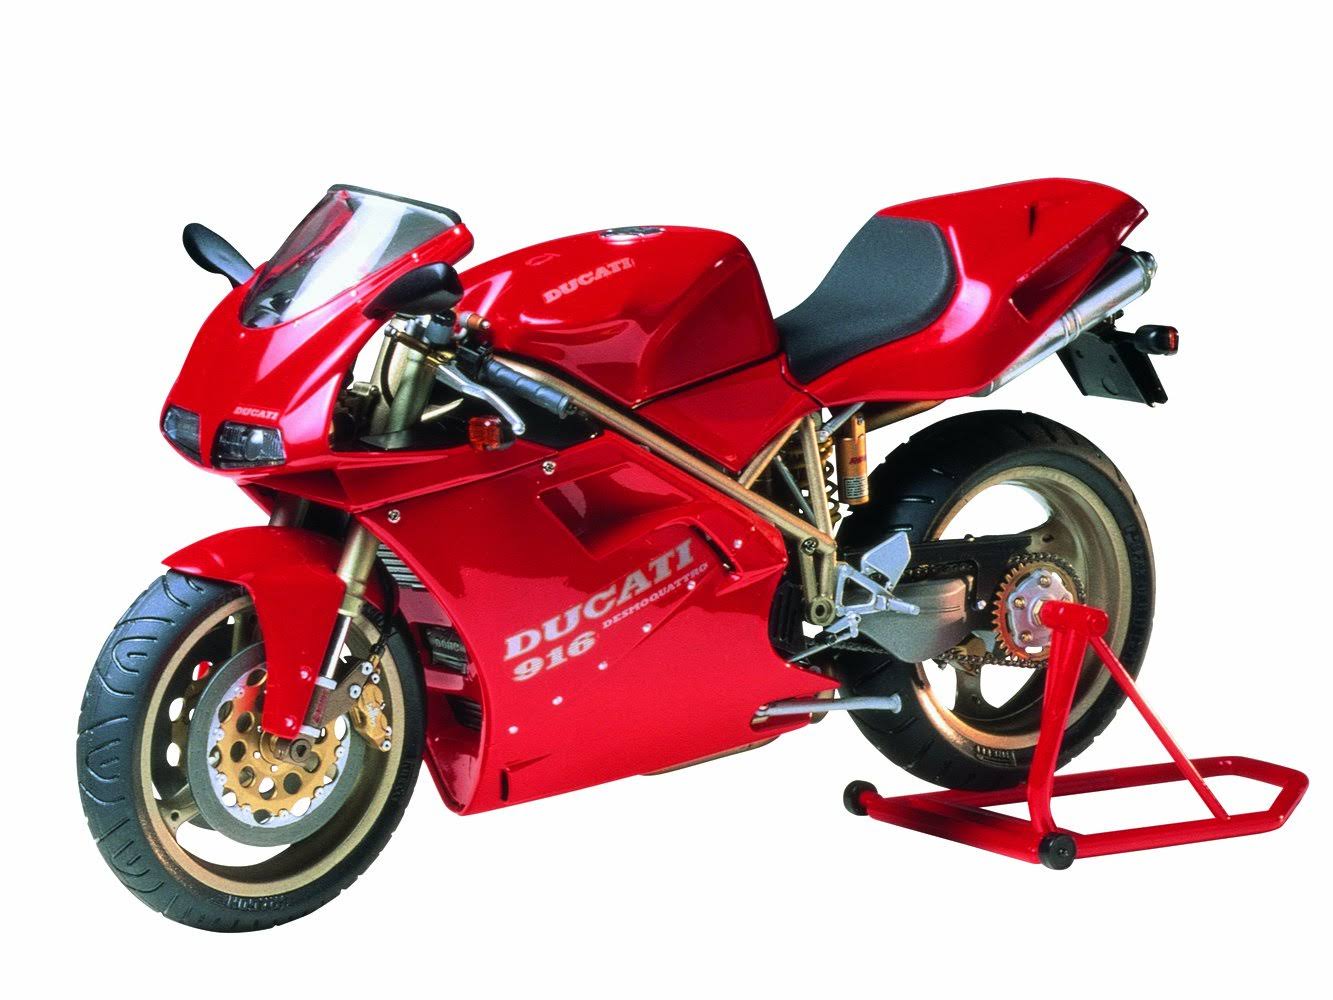 Tamiya Ducati 916 Motorcycle Die-Cast Model Vehicle - 1:12 Scale